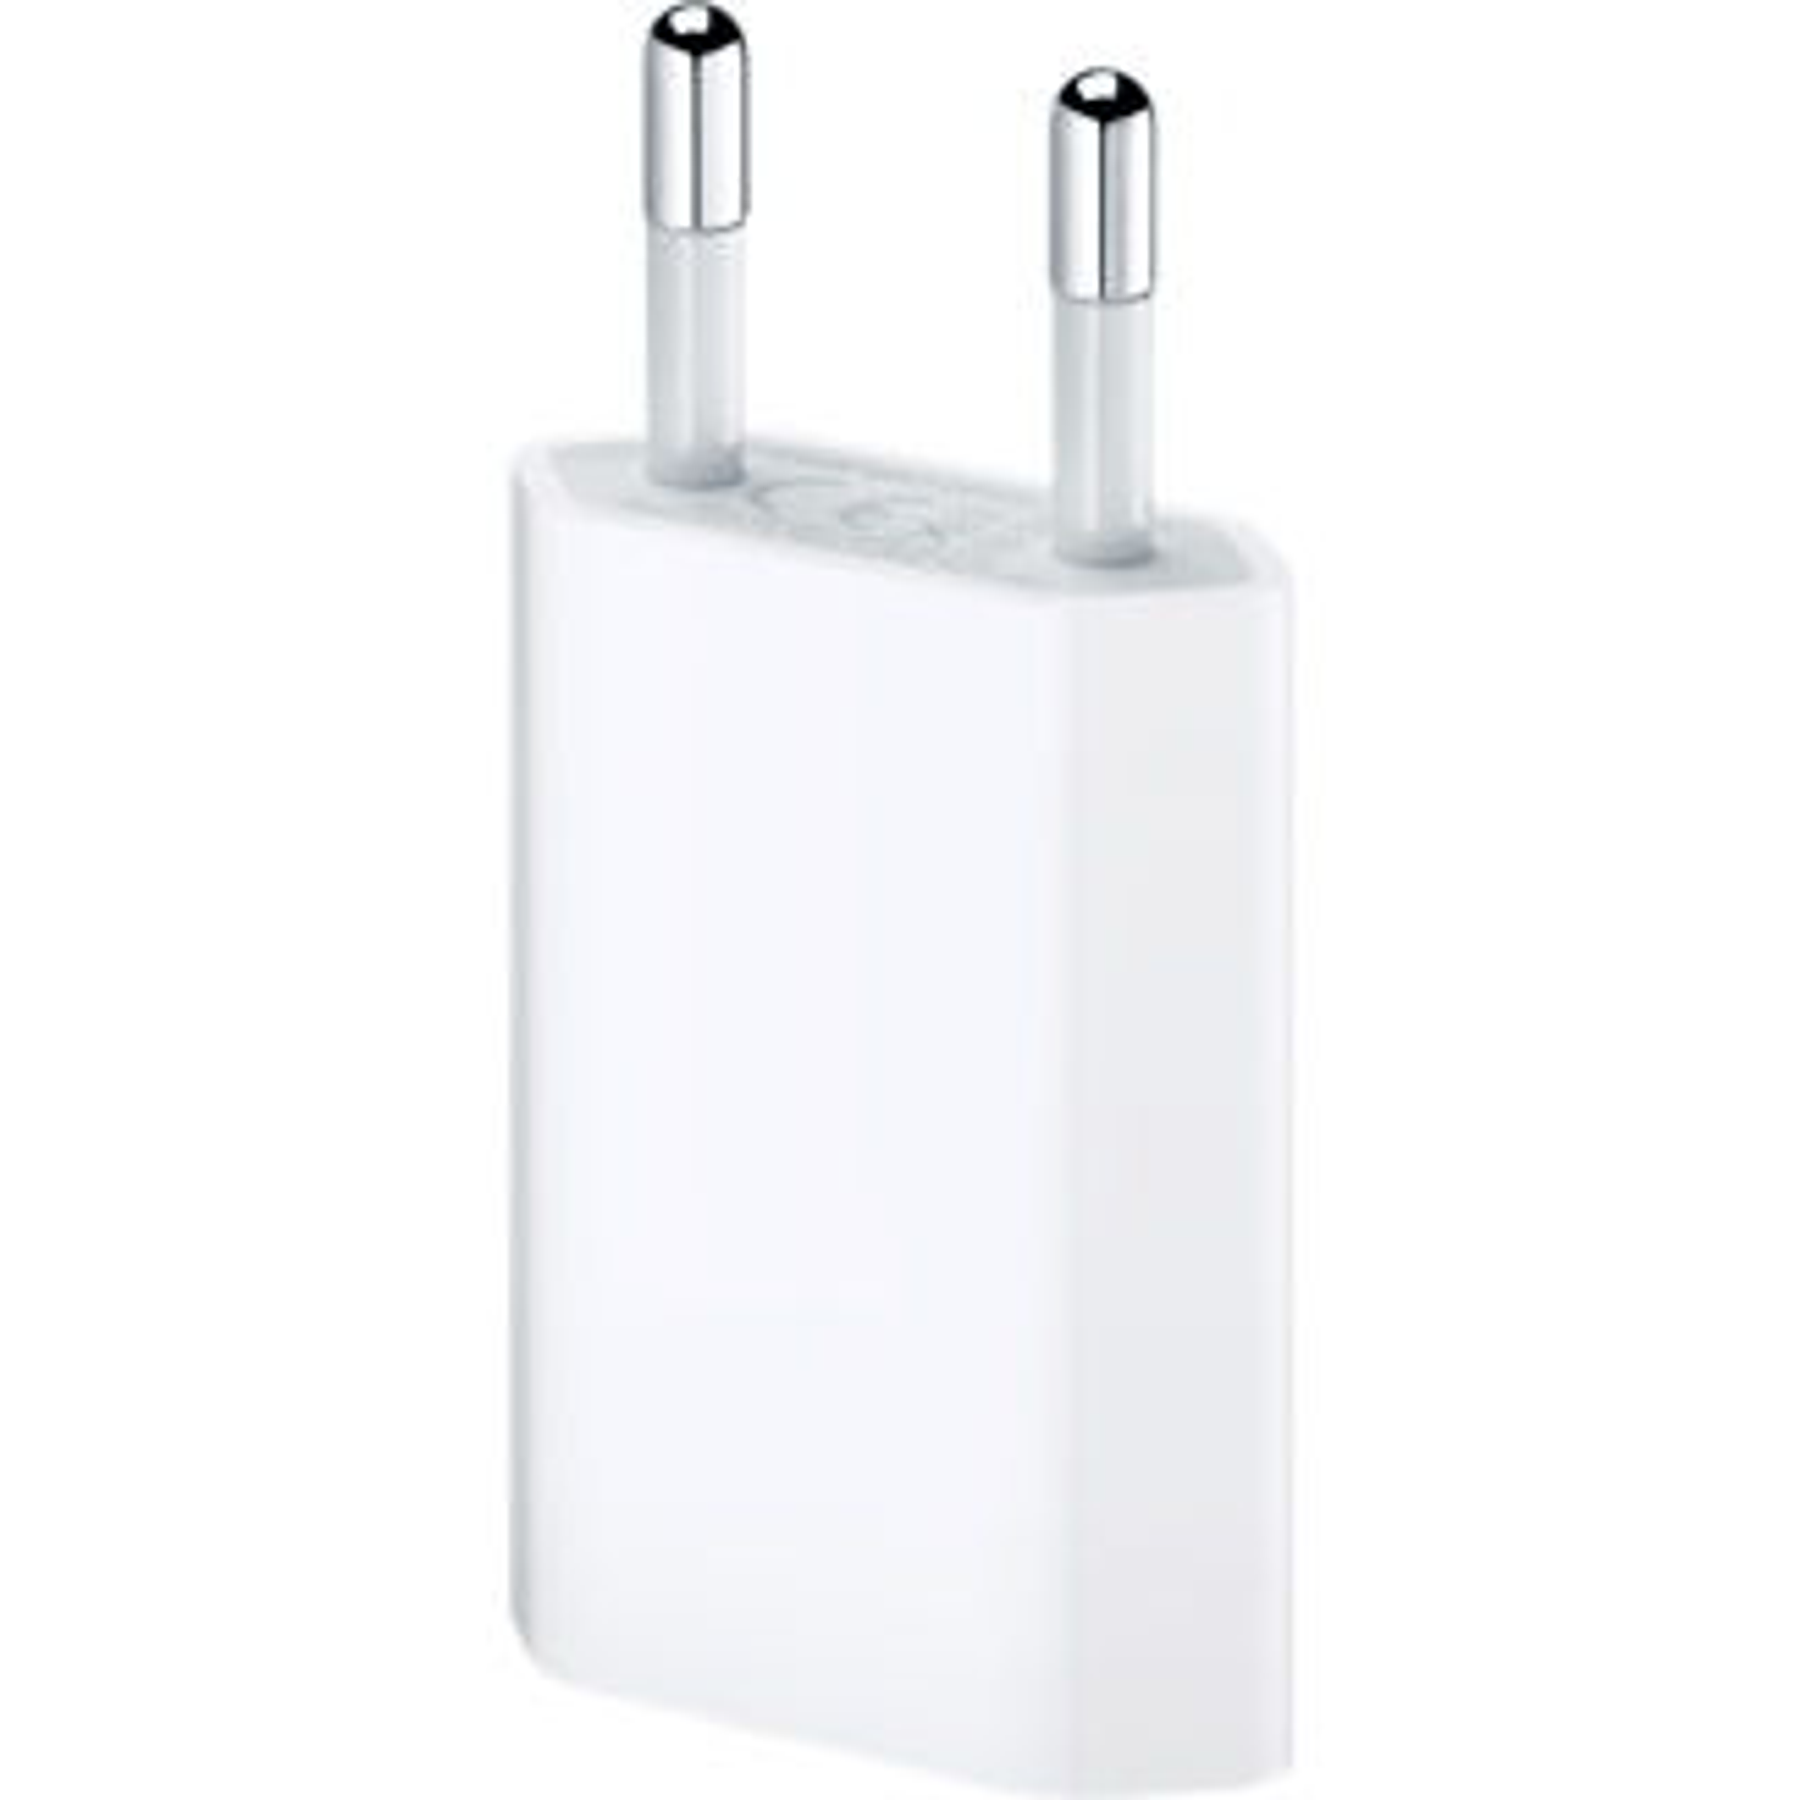 Apple USB Cargador 5 W para iPhone/No incluye el cable USB